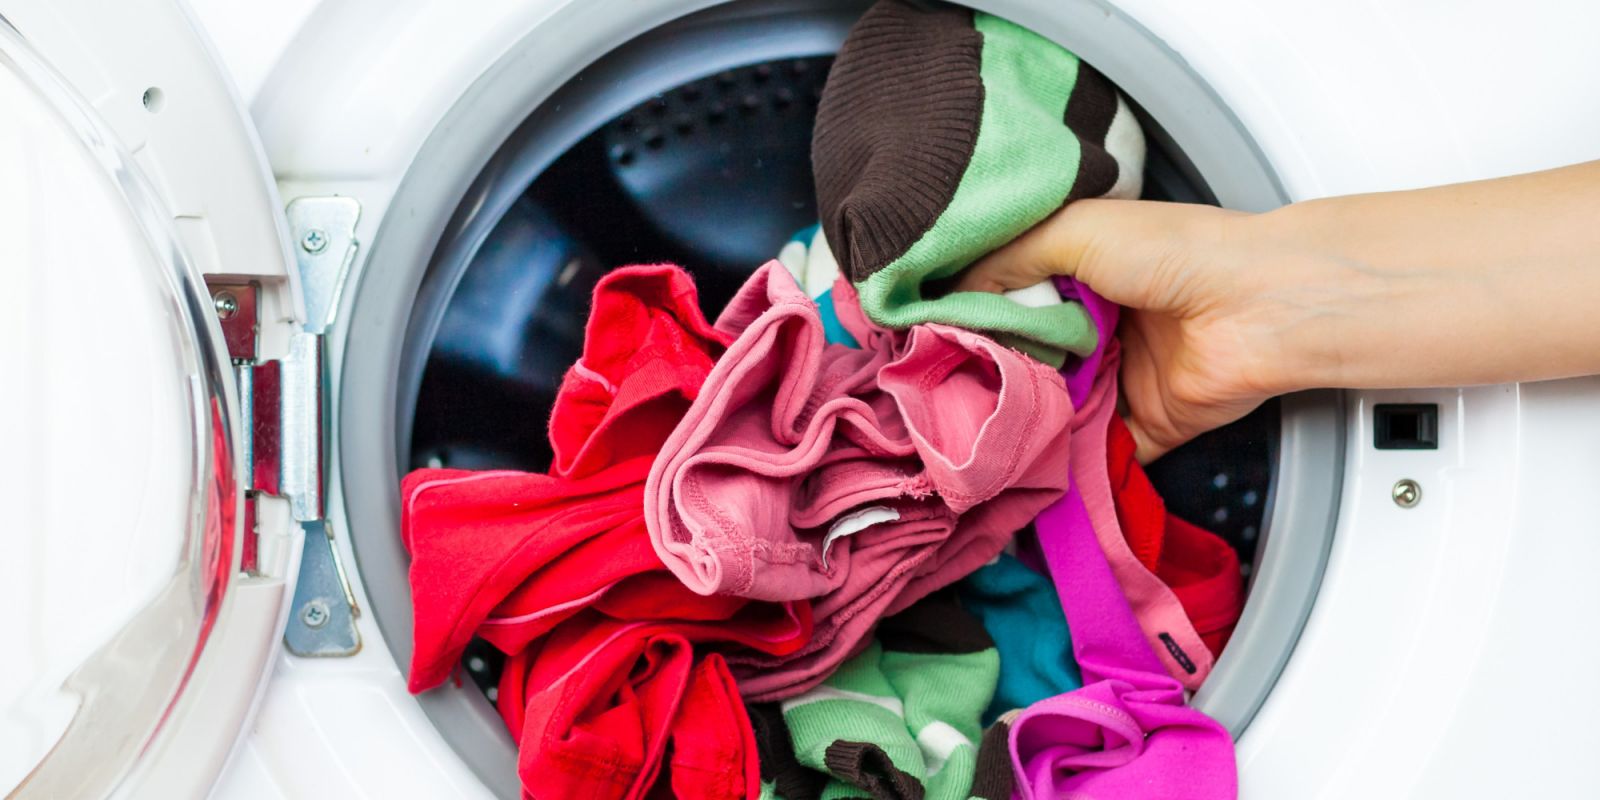 Nữ giới khi giặt đồ lót cần chú ý 4 điều nếu không muốn vi khuẩn tích tụ gây hại vùng kín - Ảnh 2.